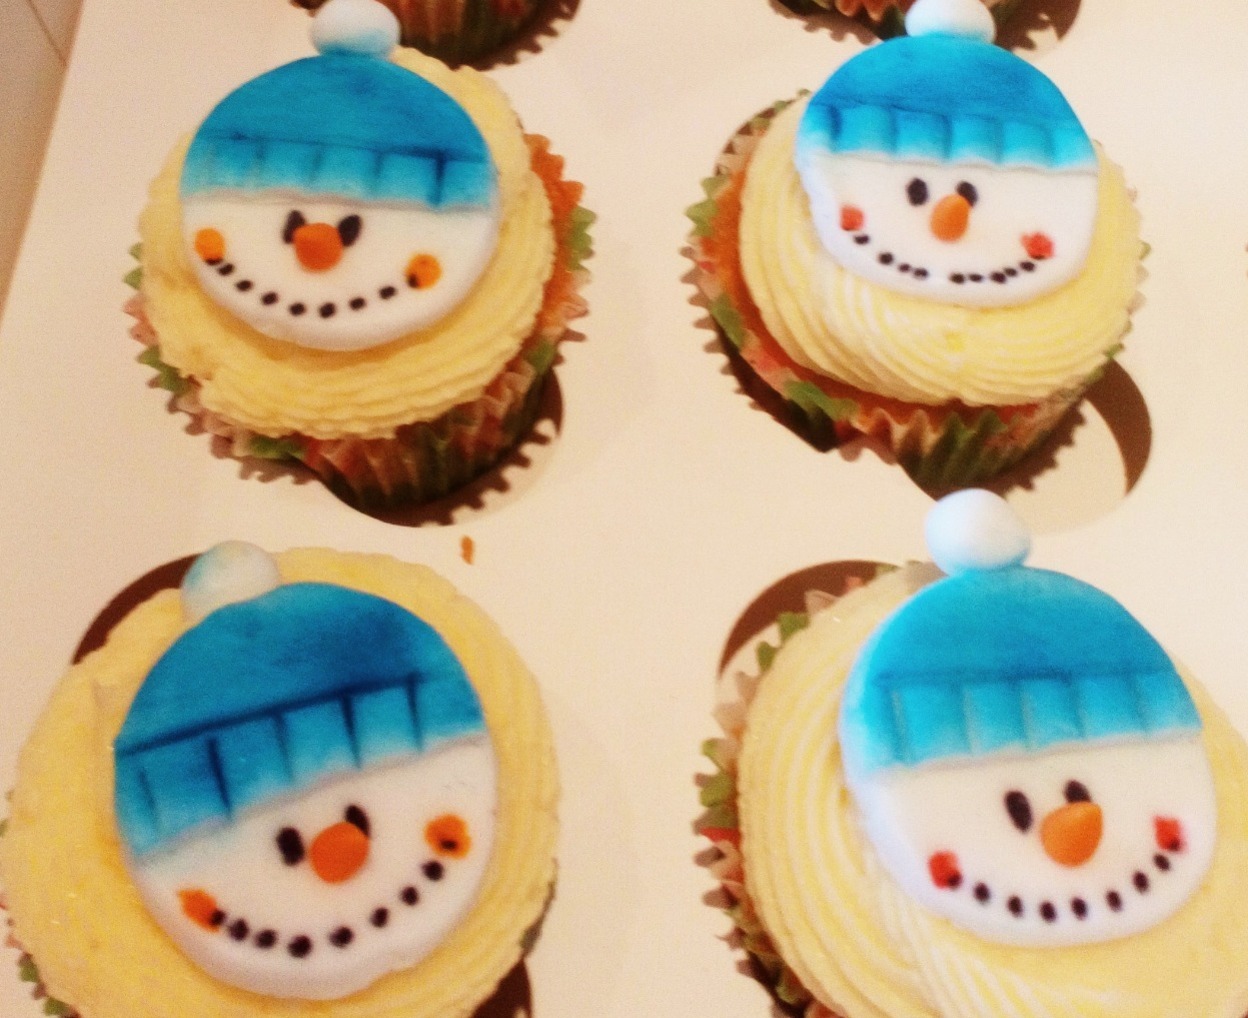 Snowman face cupcakes